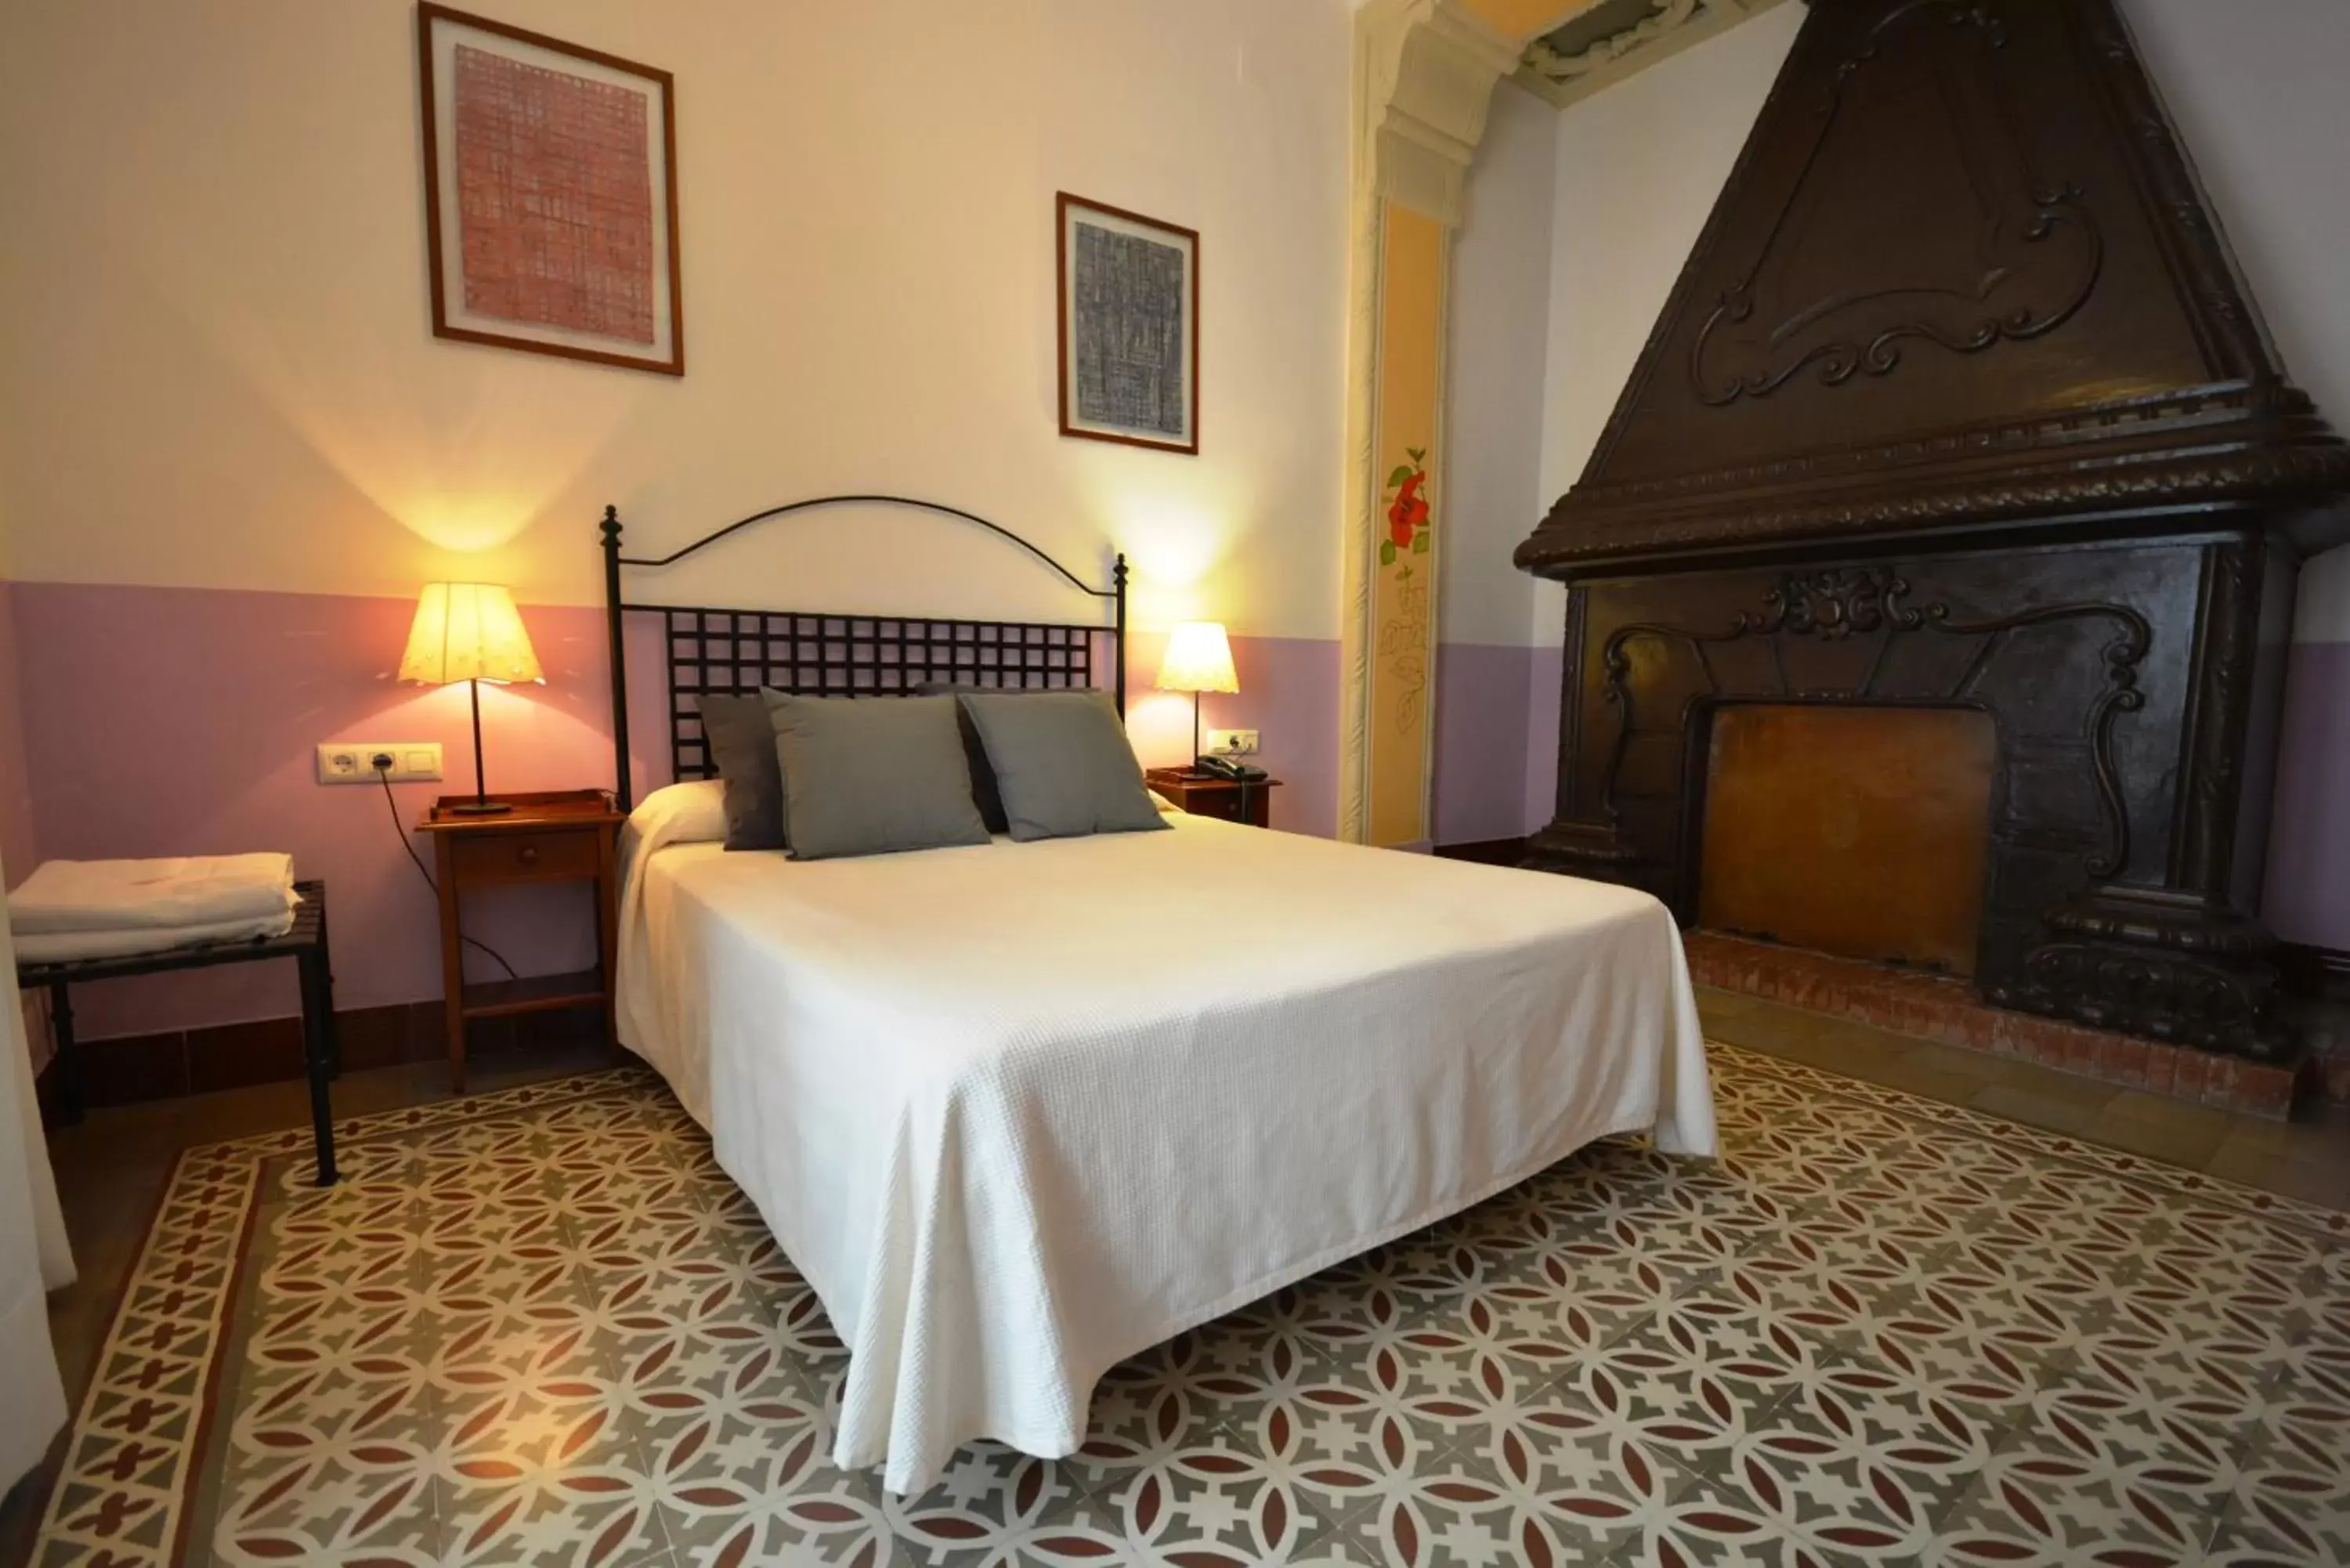 Bed, Room Photo in Hotel Casa de los Azulejos